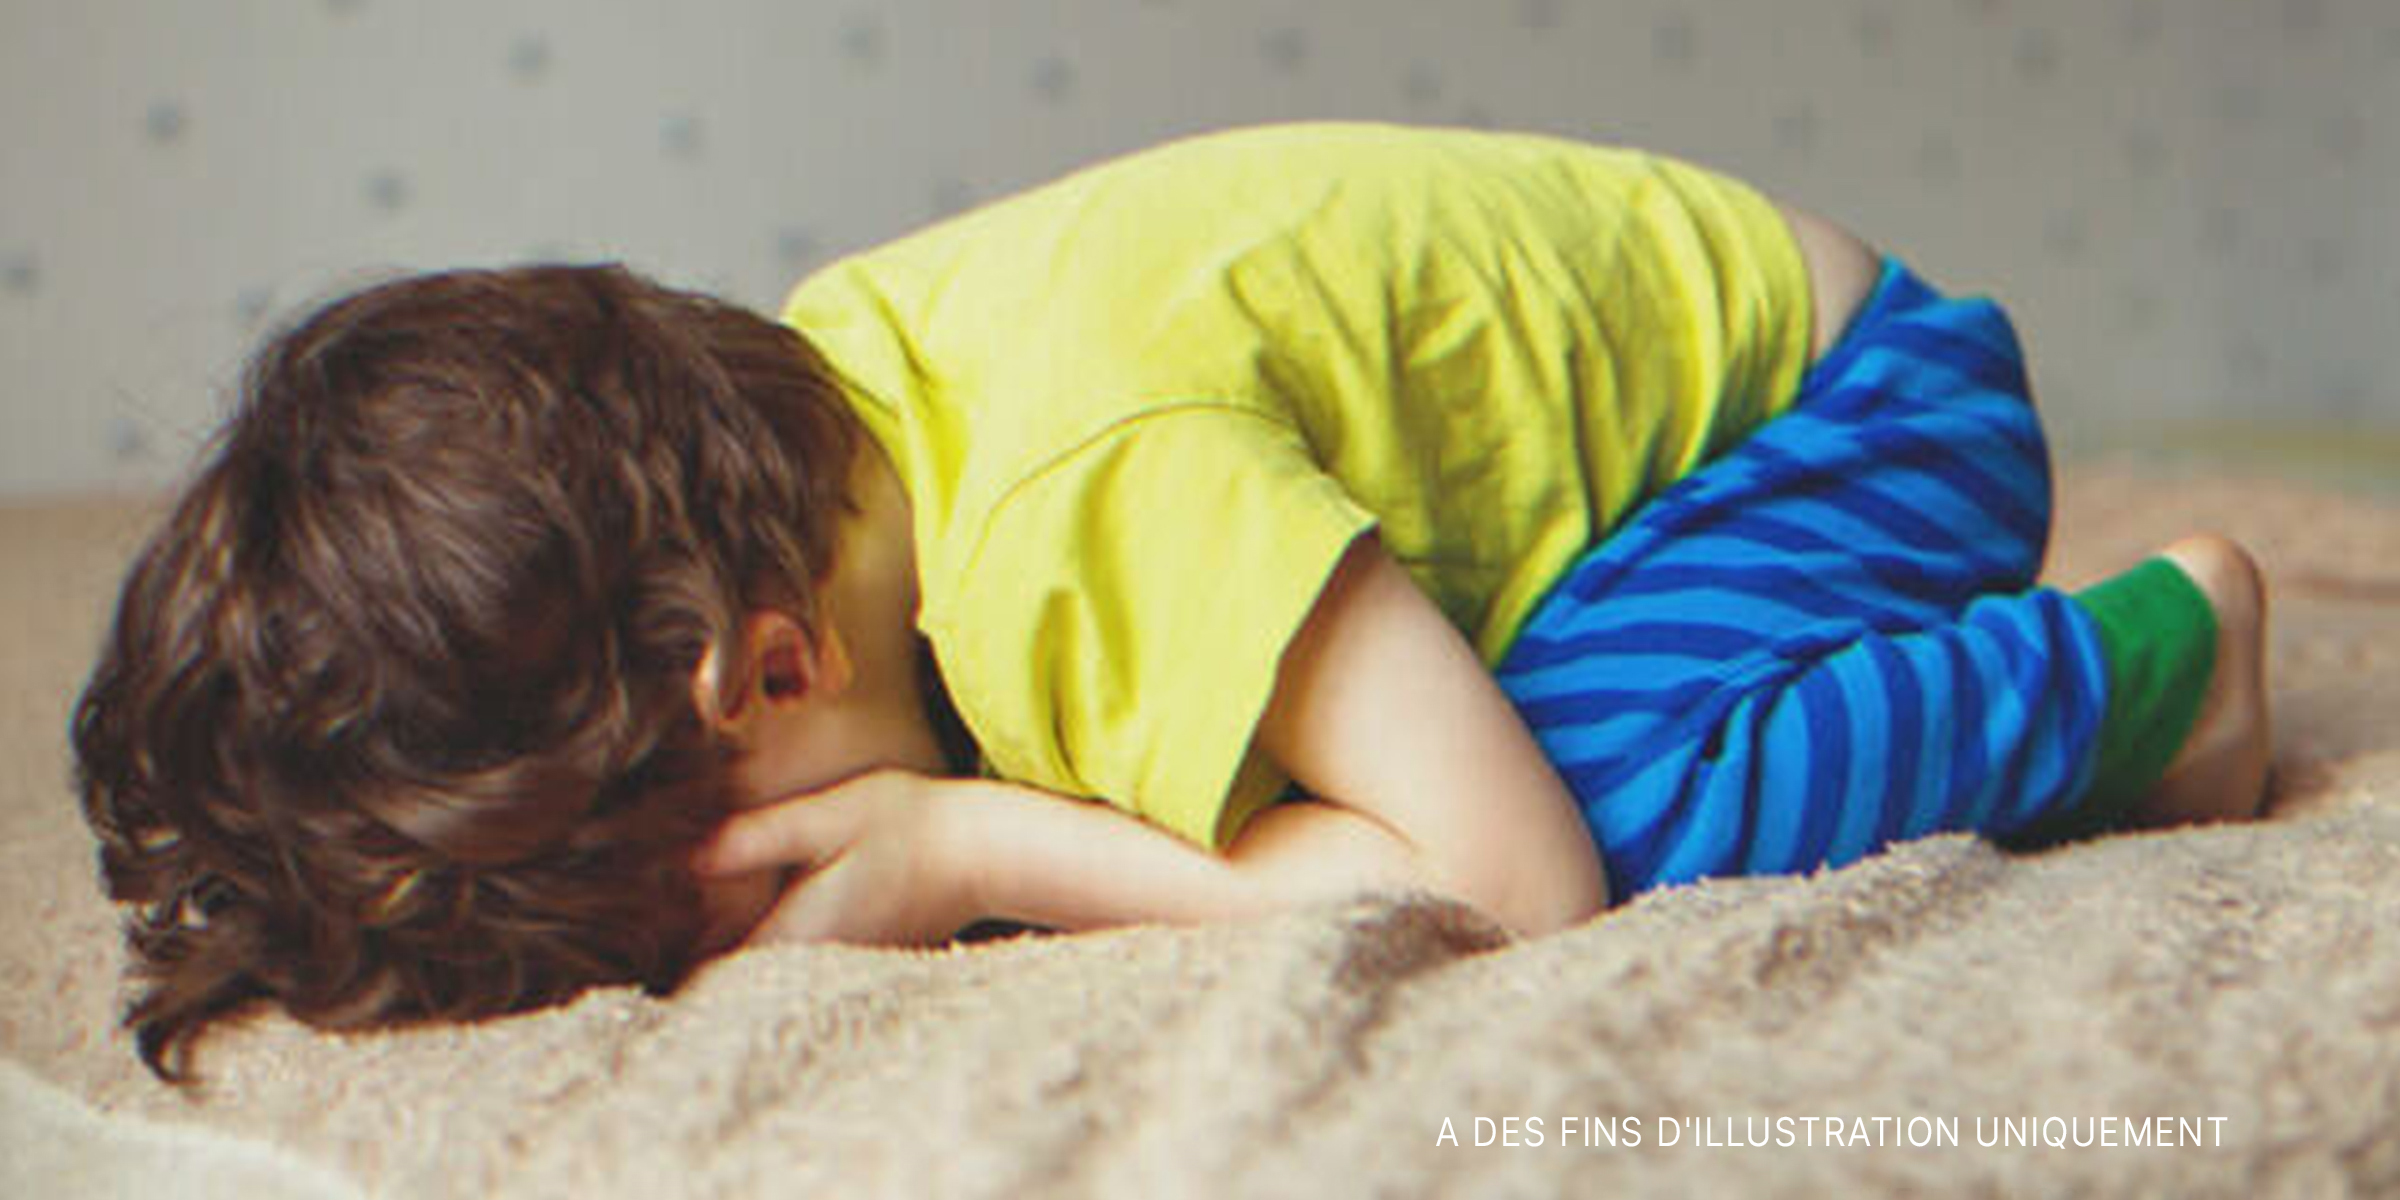 Un petit garçon qui pleure dans son lit | Source : Shutterstock